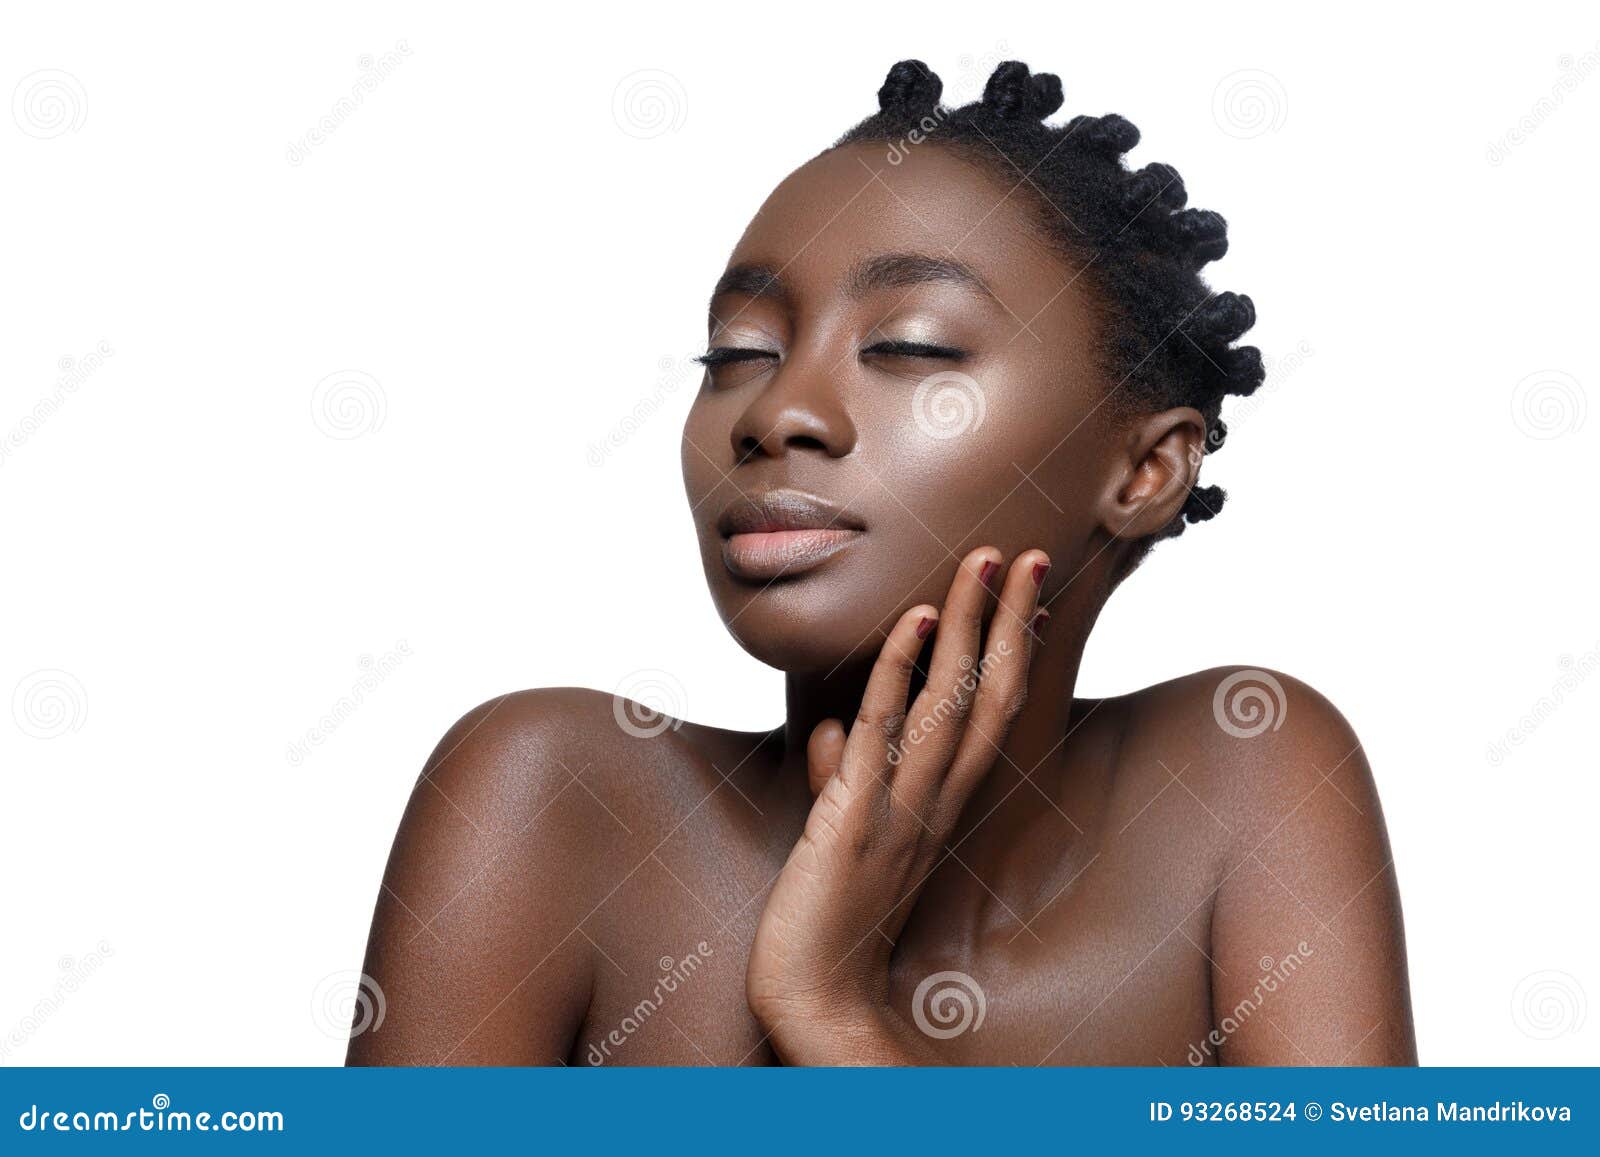 beautiful black girl touching face